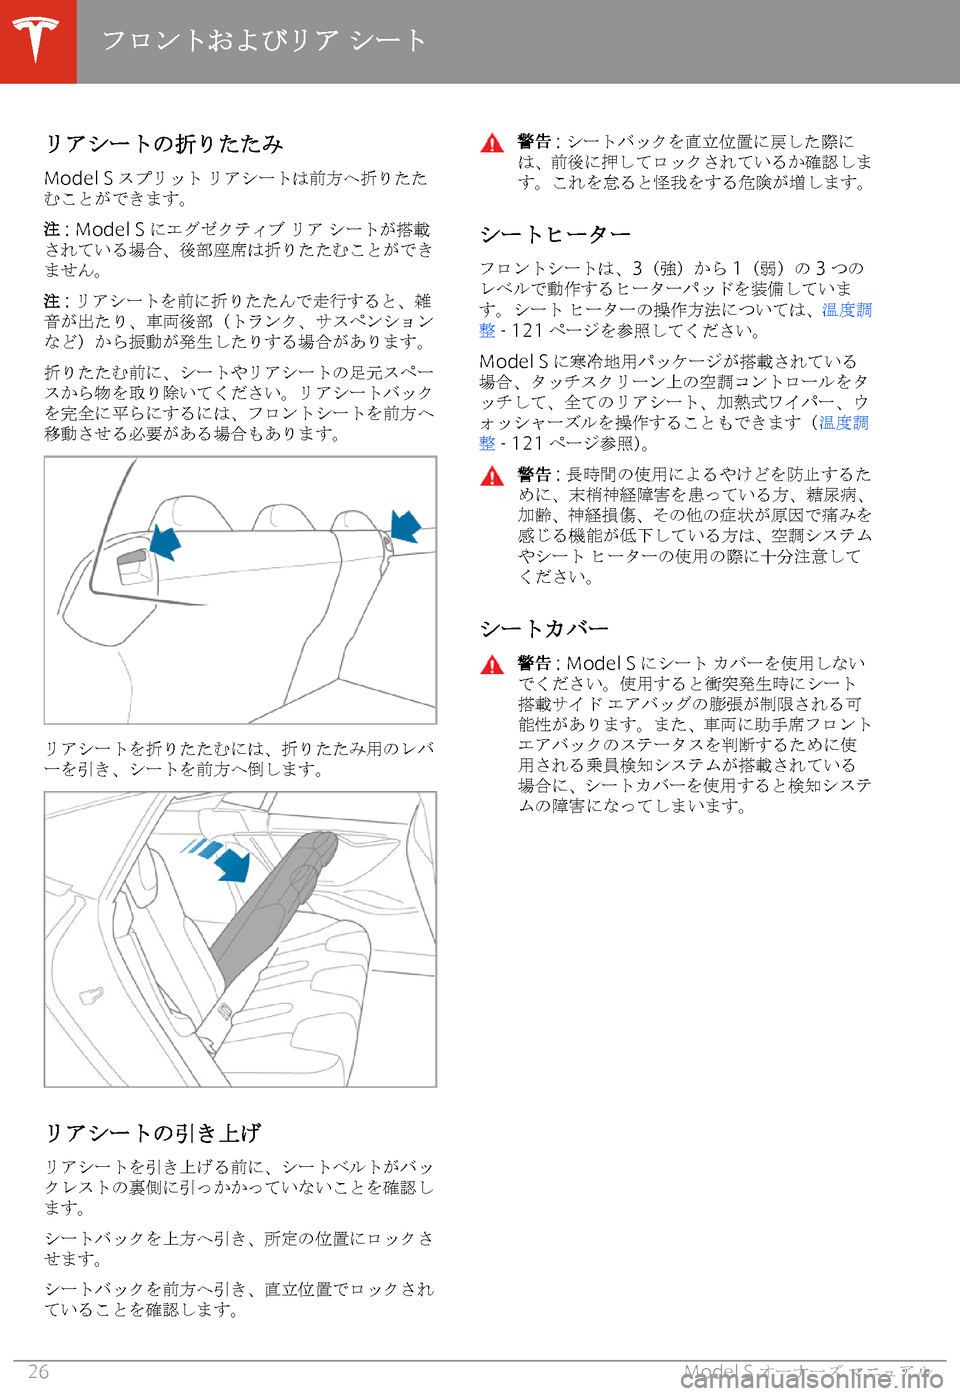 TESLA MODEL S 2020  取扱説明書 (in Japanese) 